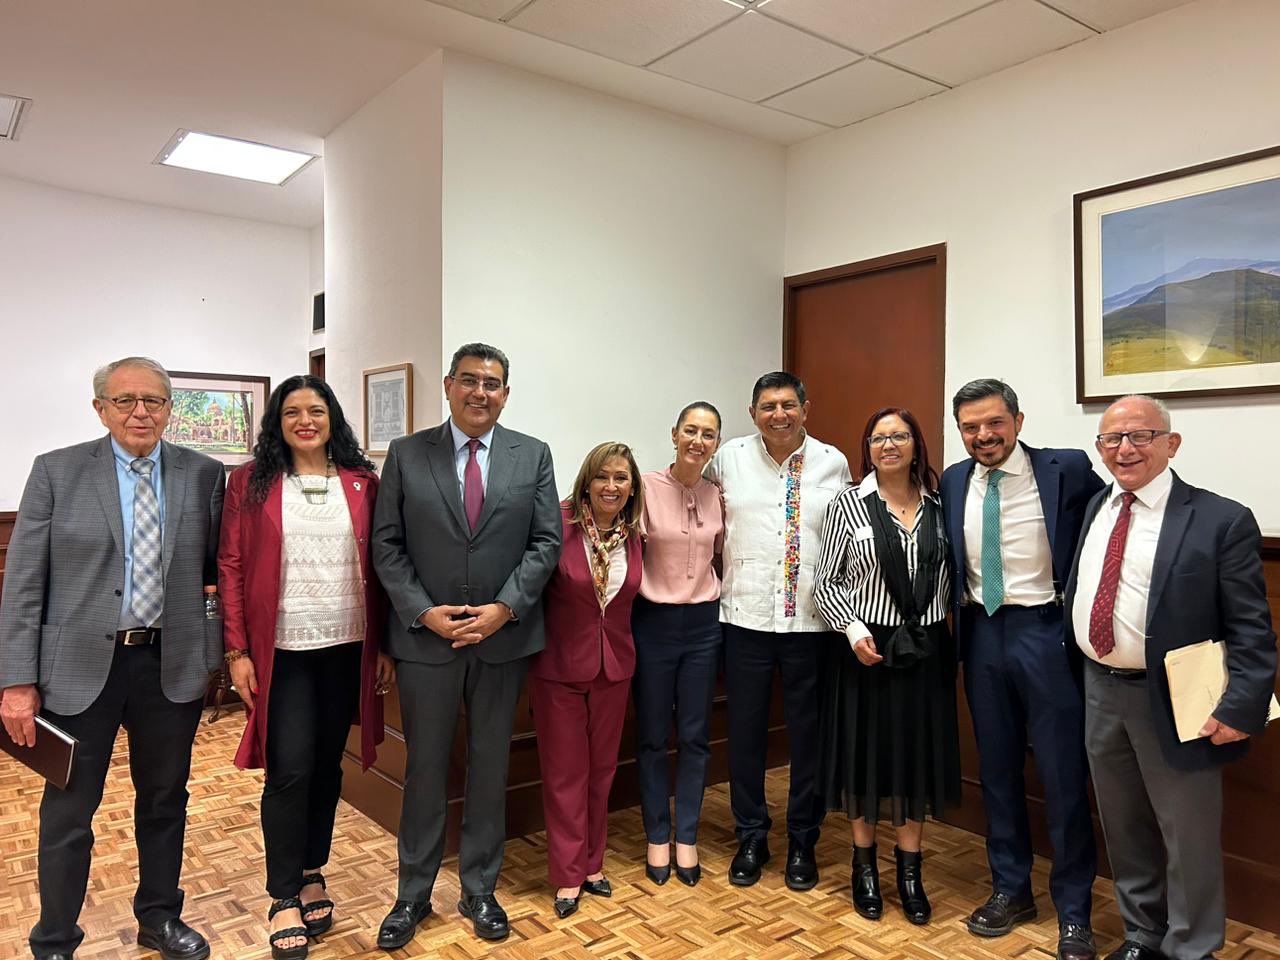 Gobernador Céspedes Peregrina participó en reunión encabezada por AMLO